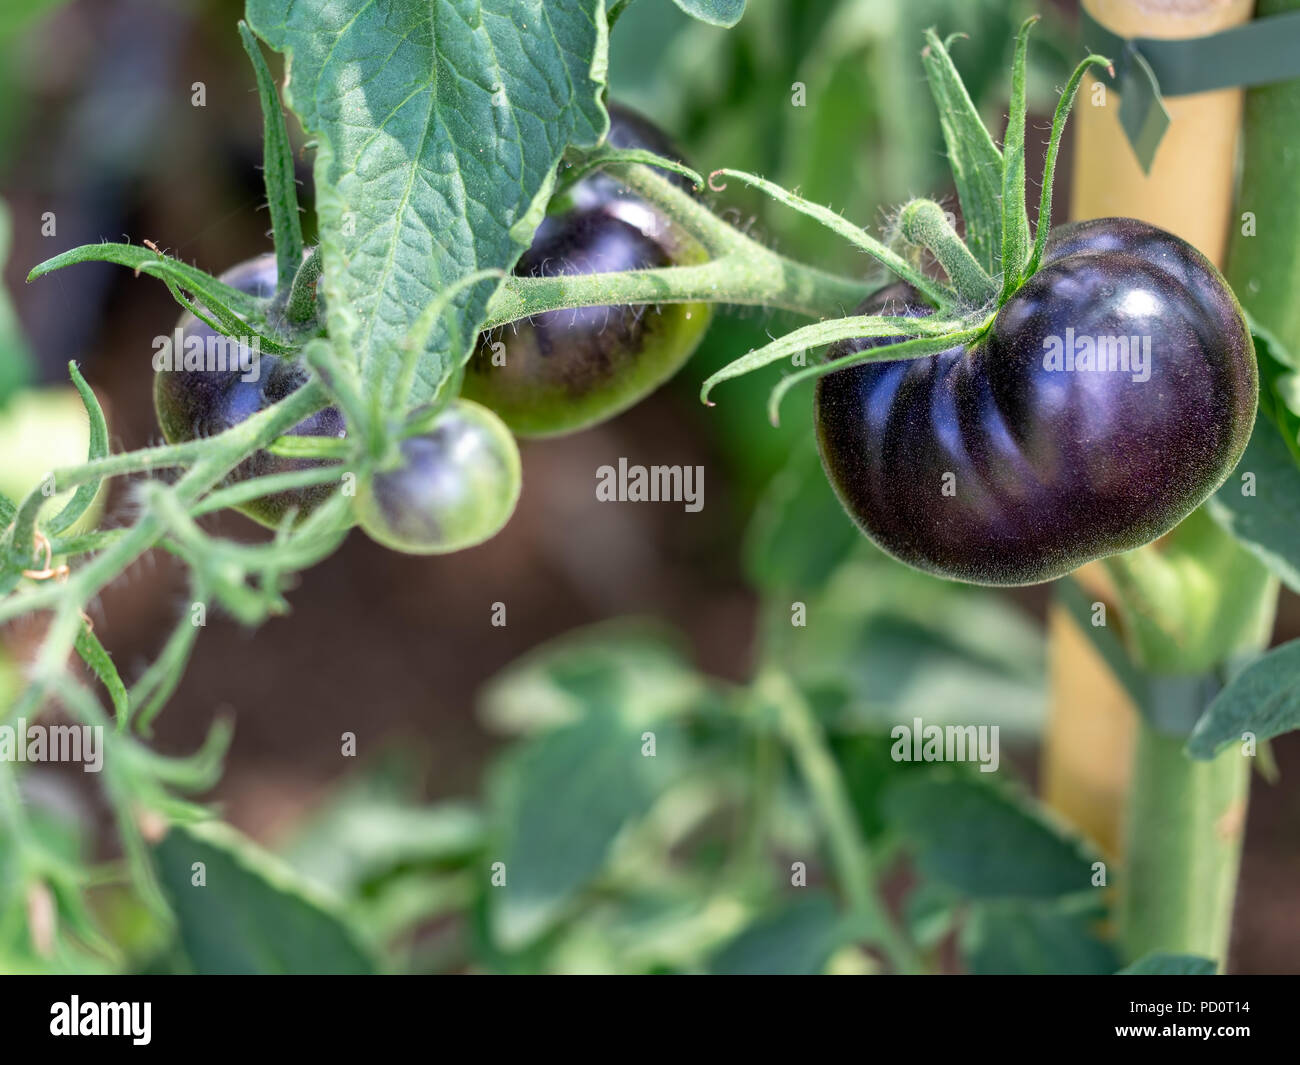 Les plants de tomate noire détail, dans le jardin. Complètement organique, condition naturelle. Focus différentiel. Banque D'Images